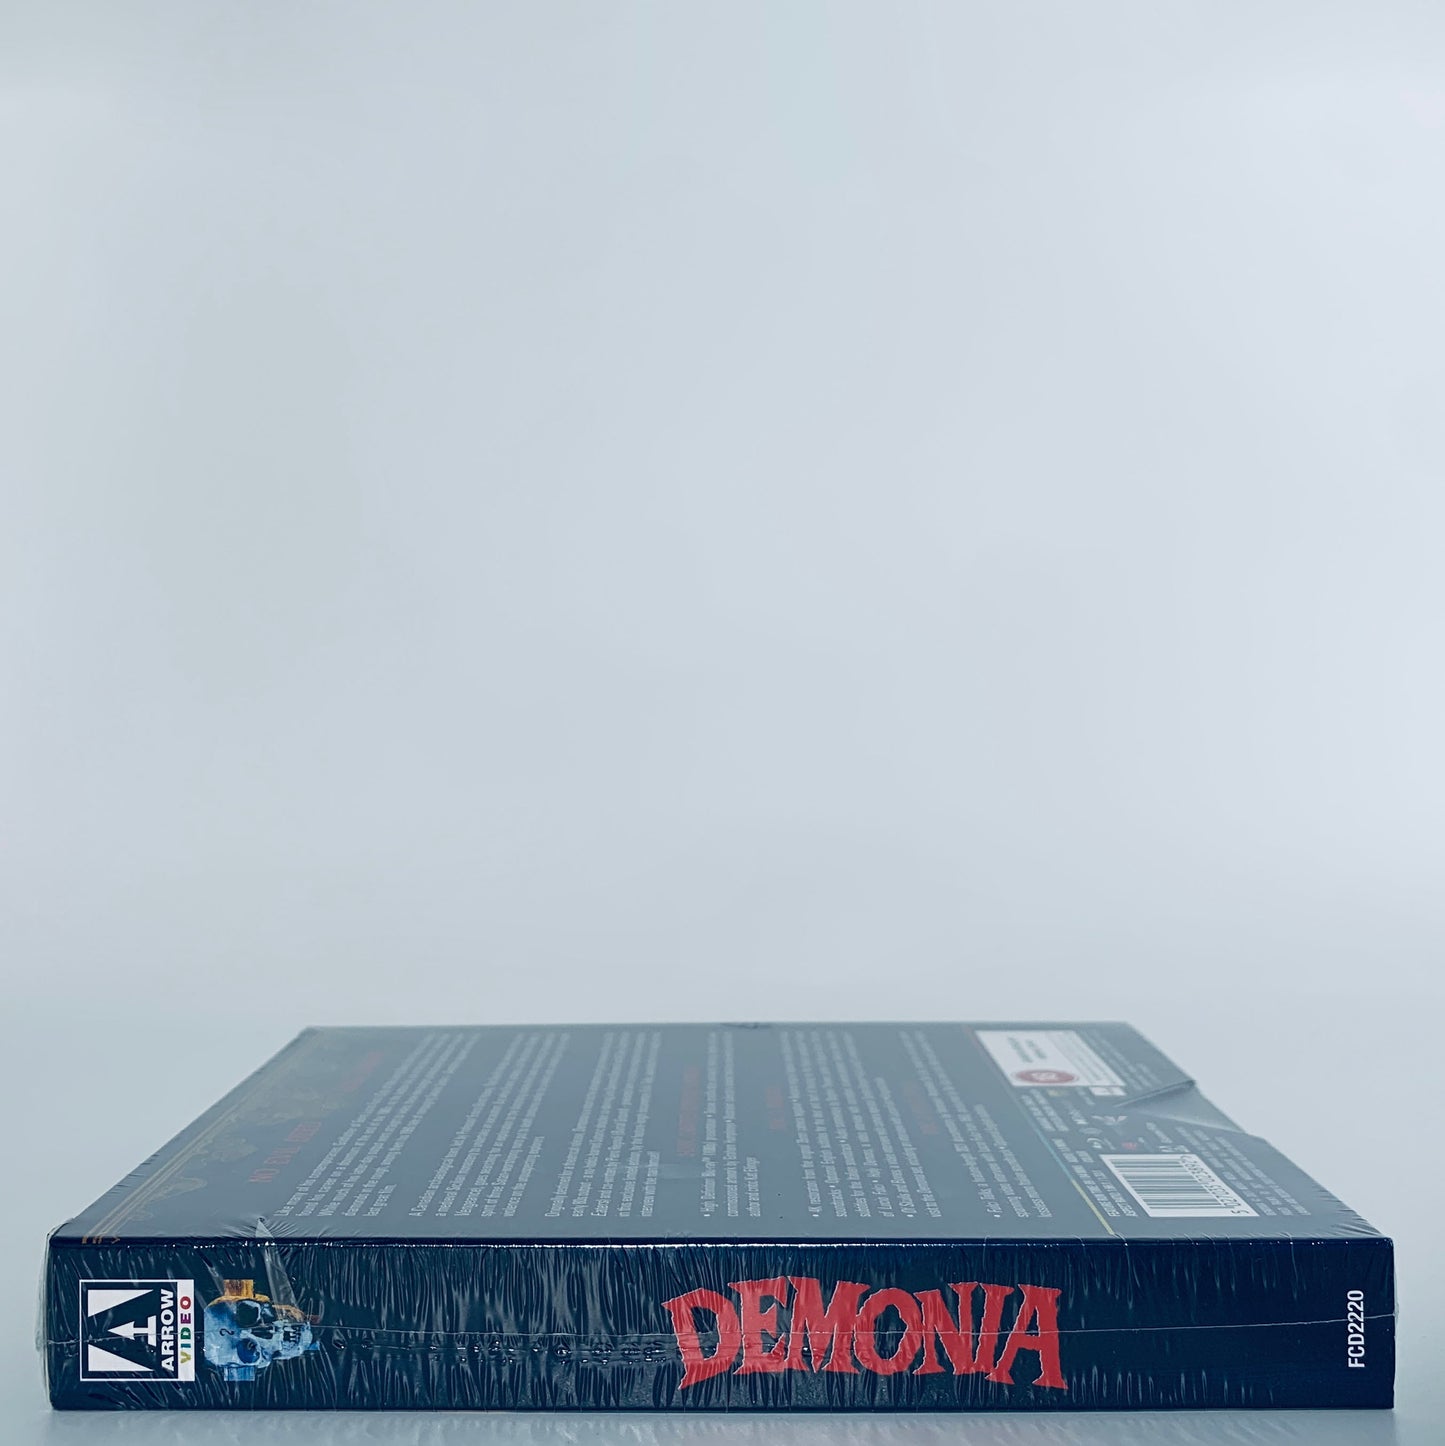 Demonia Lucio Fulci Limited Edition Region B Blu-ray Arrow Films UK